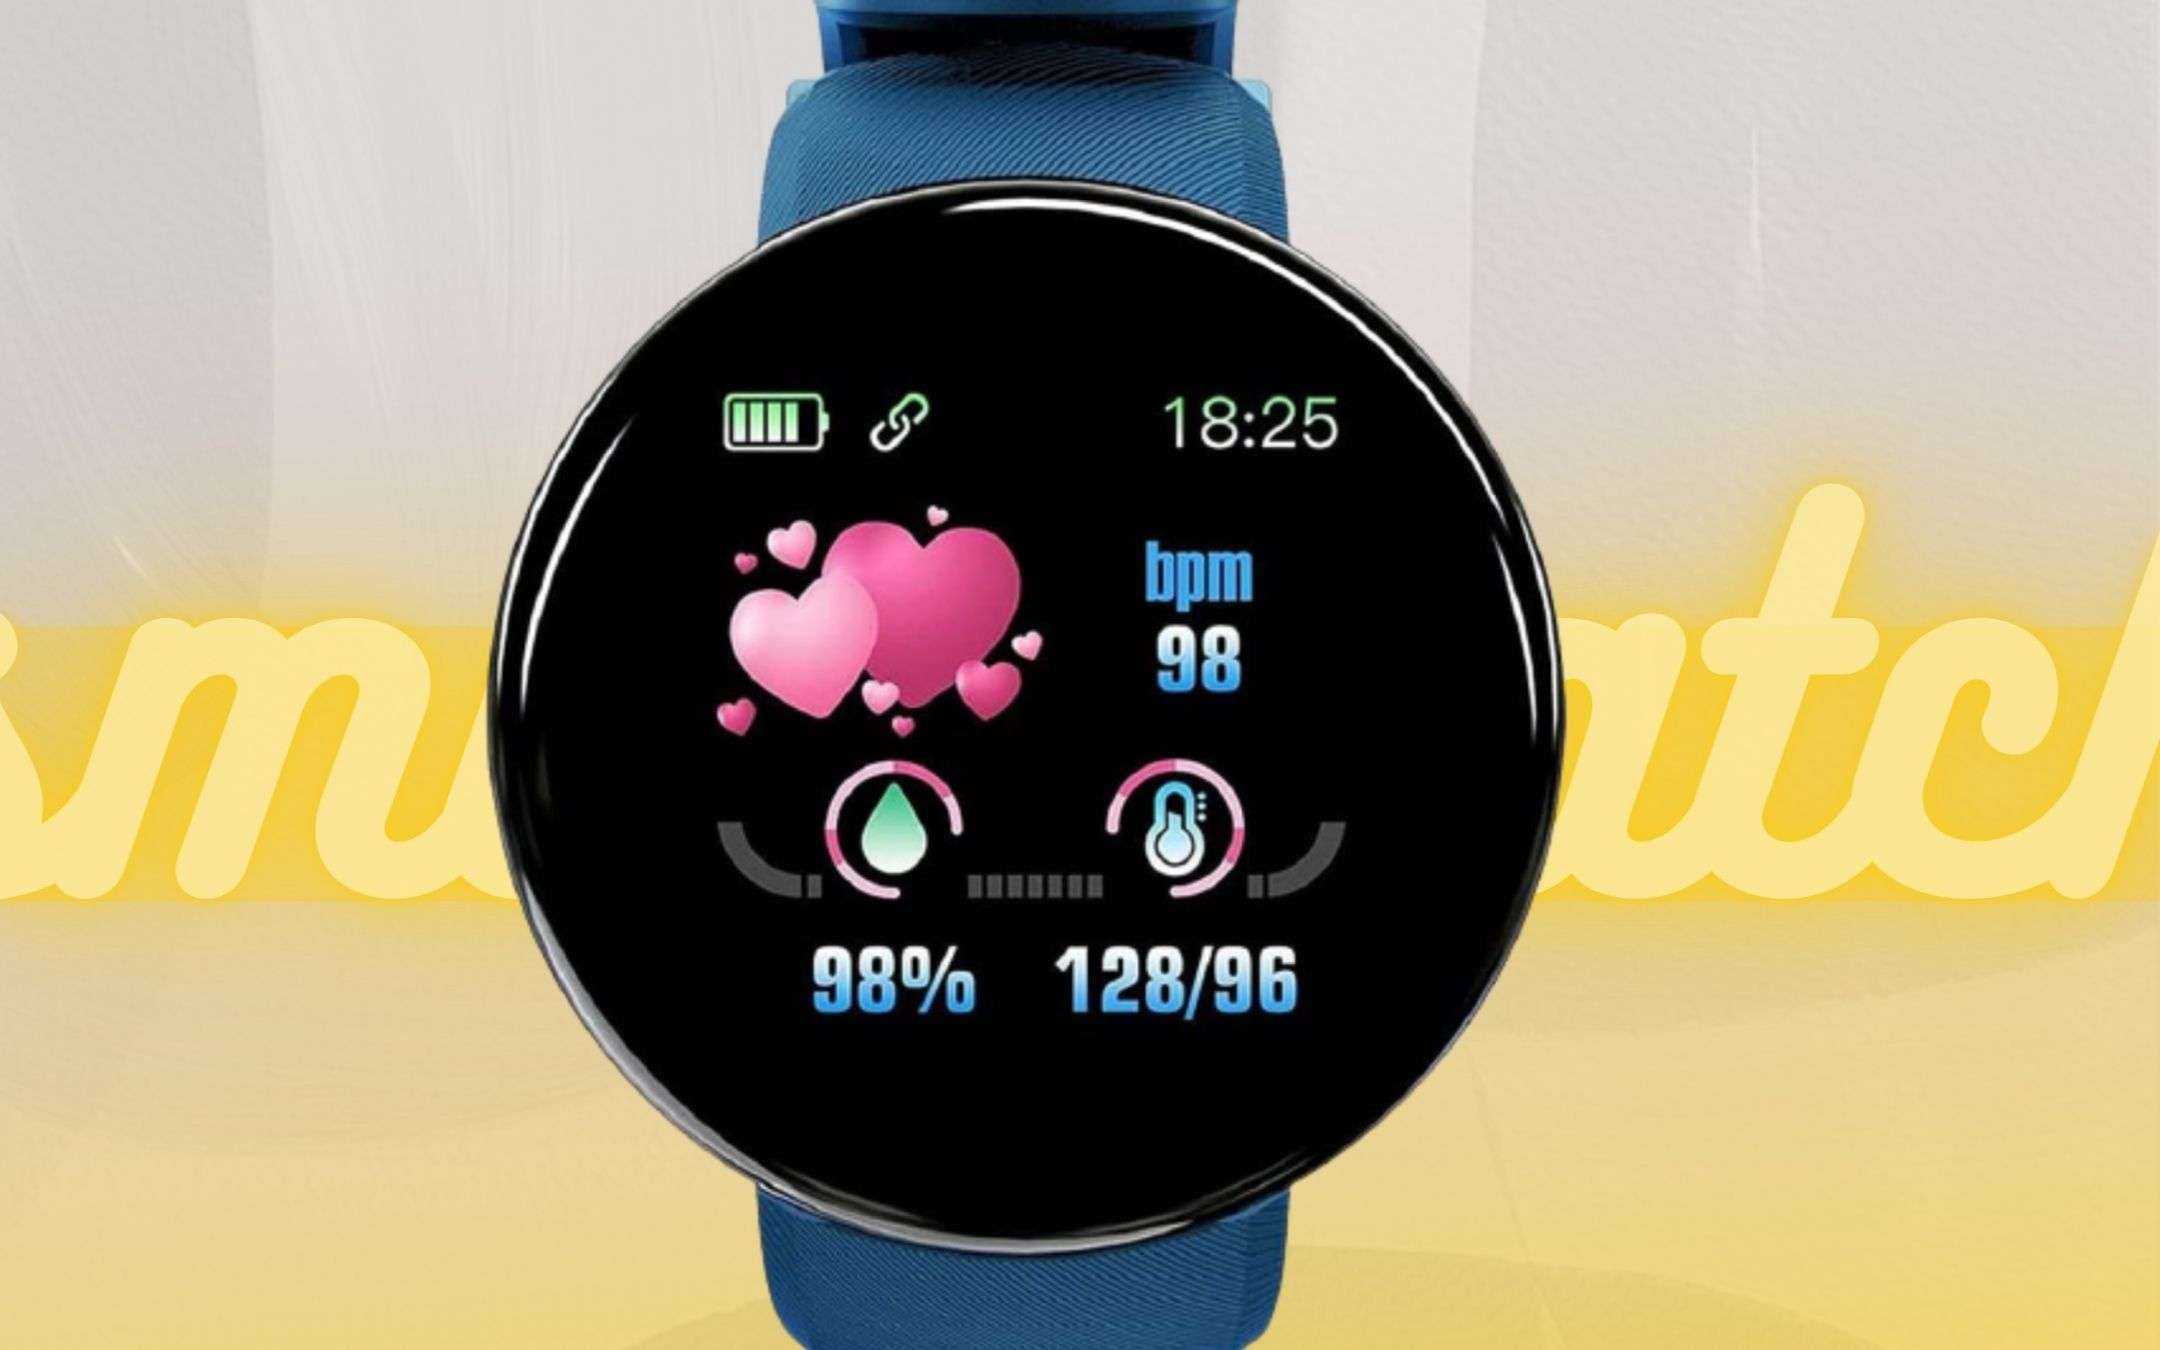 BOMBA Amazon: questo smartwatch lo paghi 7€, non è uno scherzo